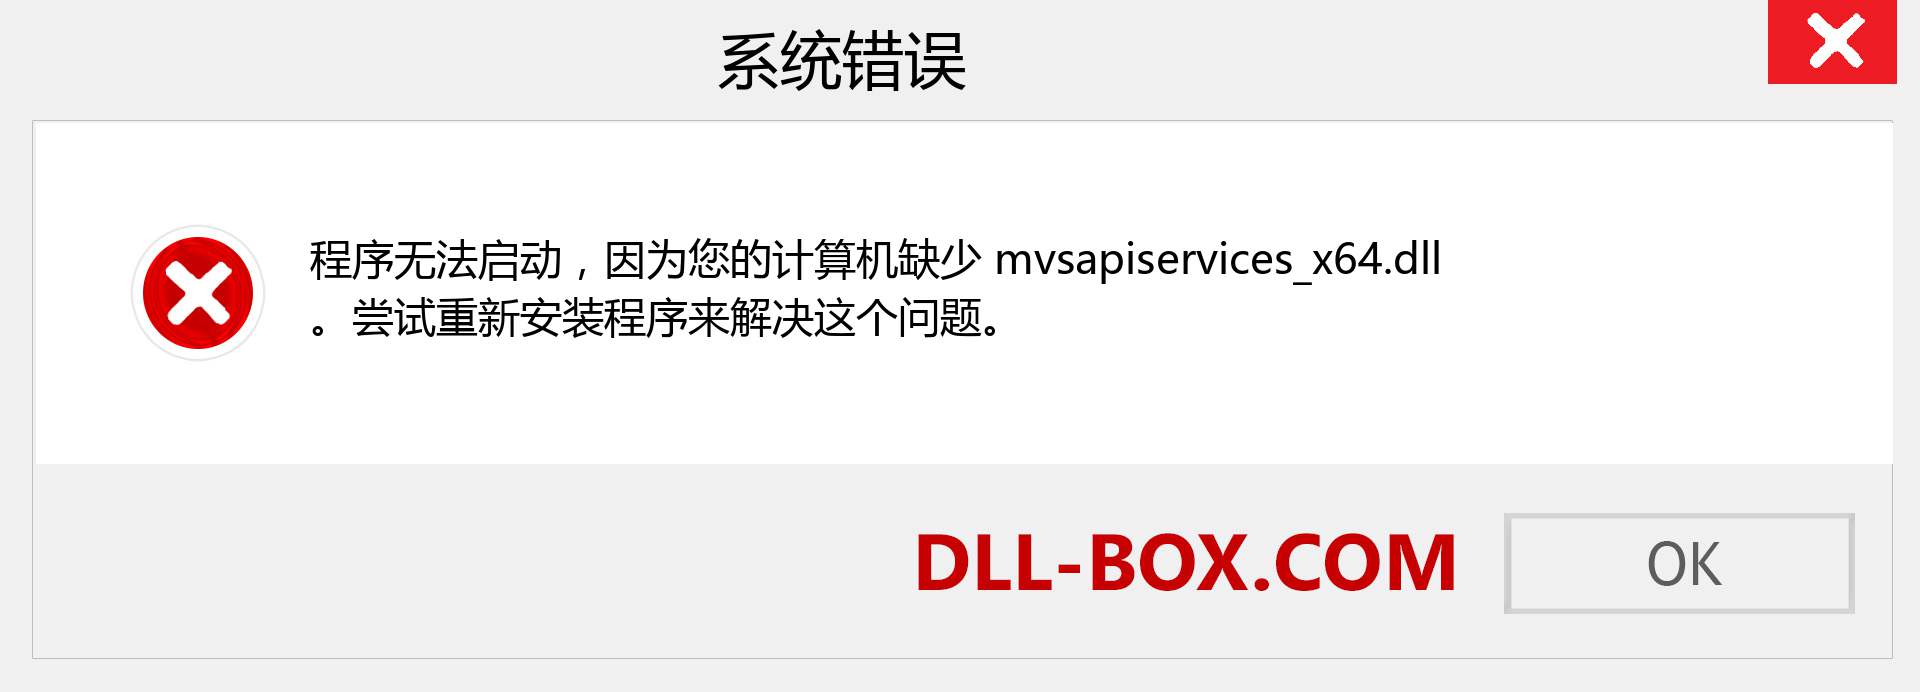 mvsapiservices_x64.dll 文件丢失？。 适用于 Windows 7、8、10 的下载 - 修复 Windows、照片、图像上的 mvsapiservices_x64 dll 丢失错误